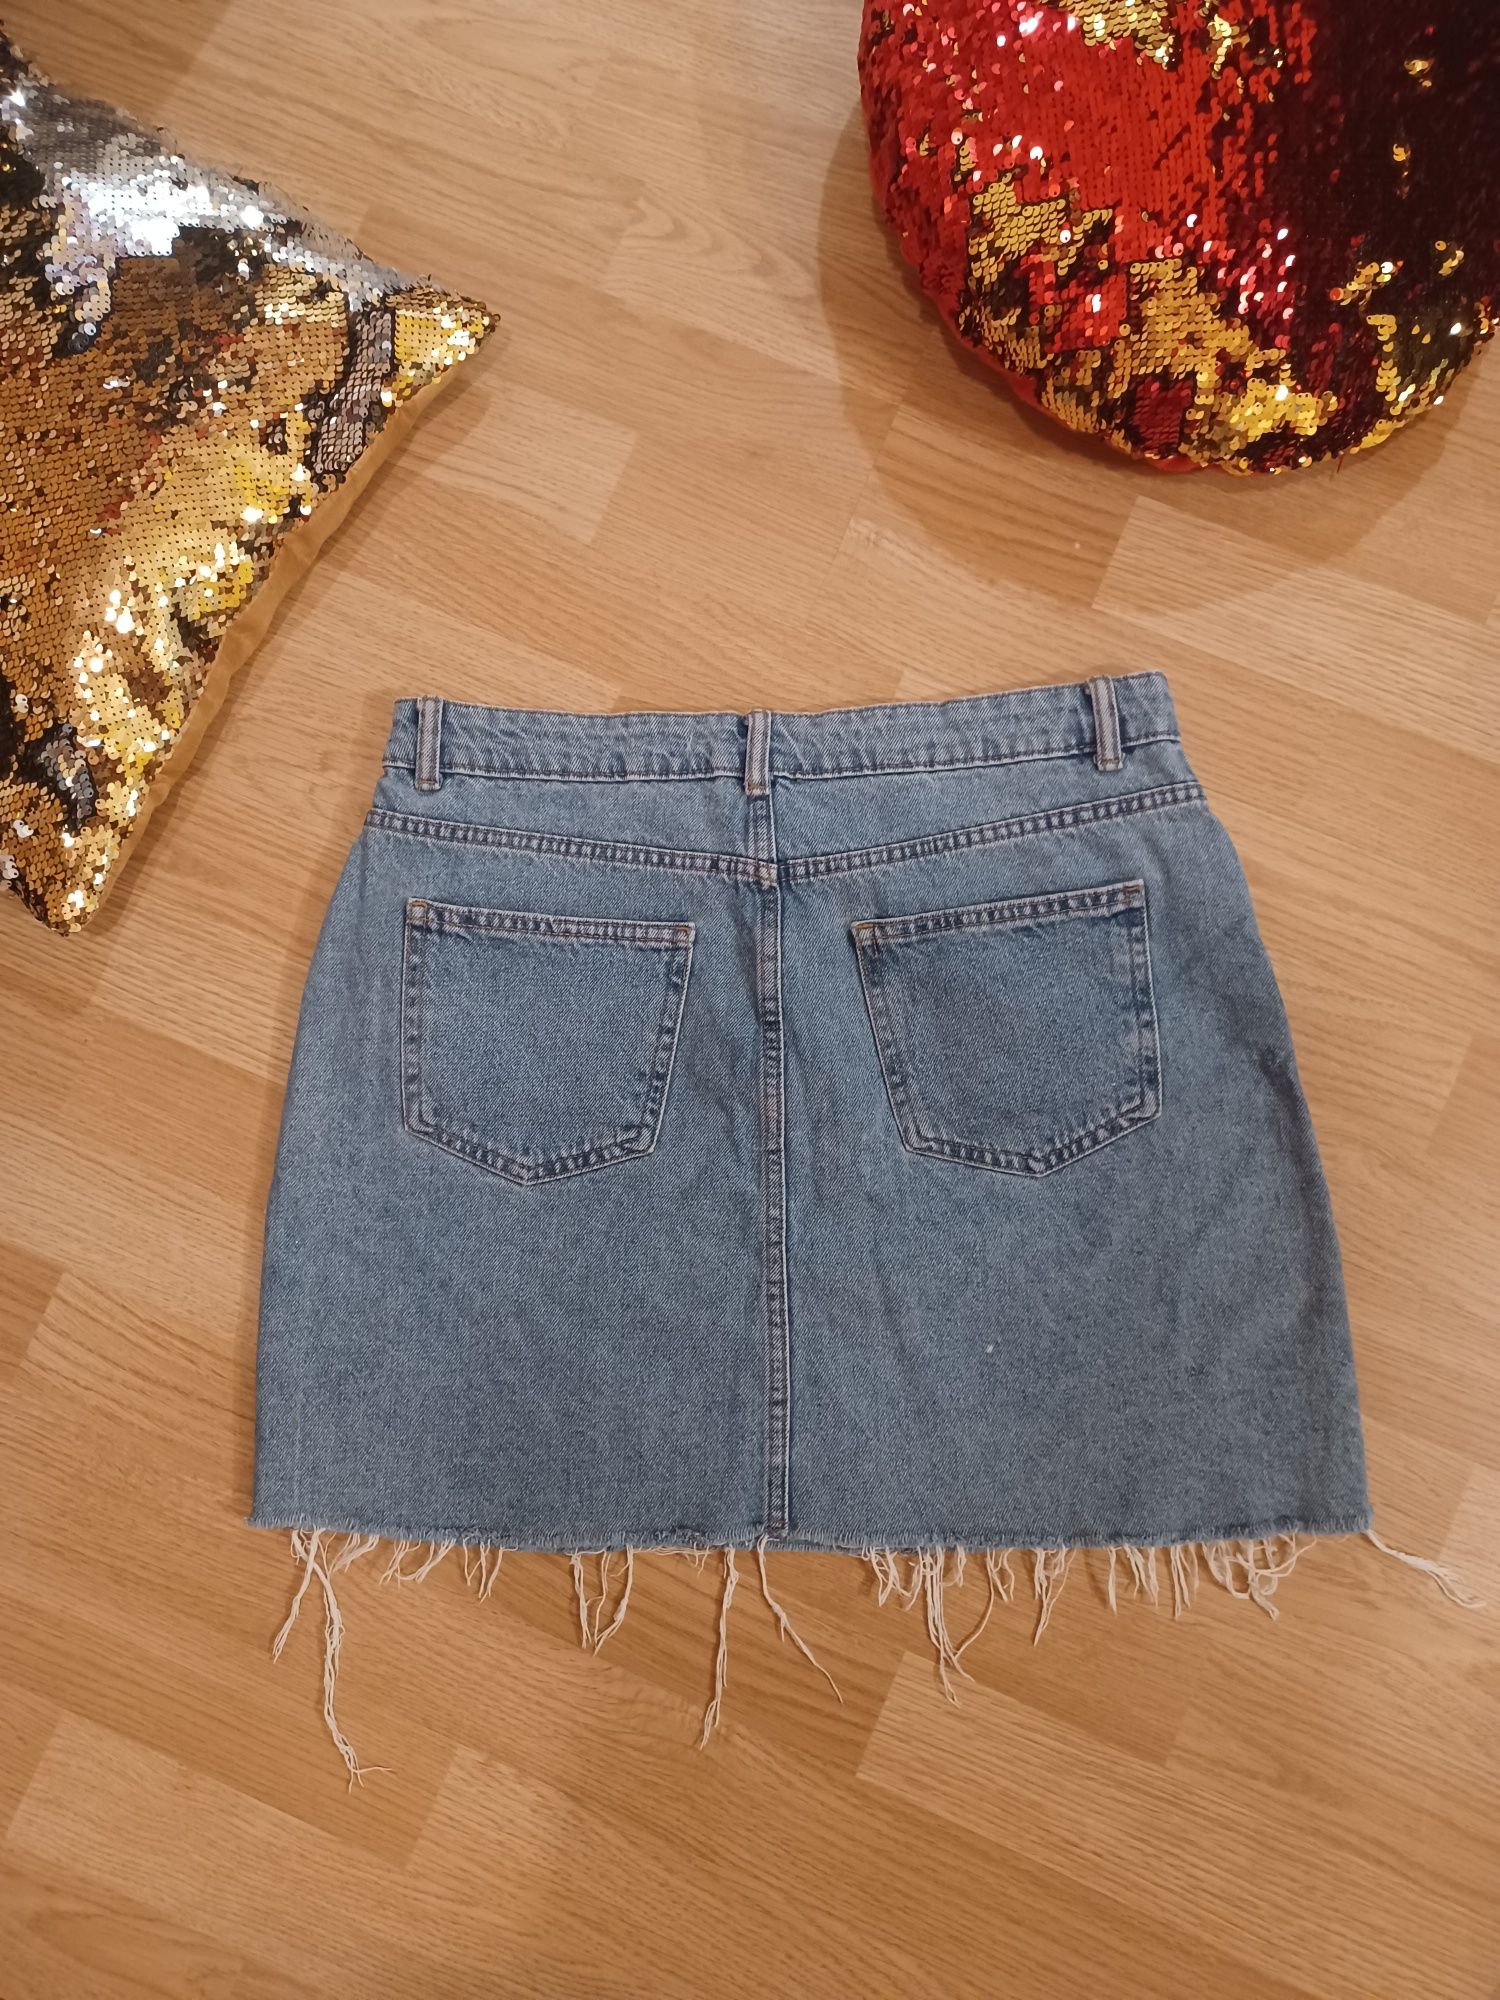 Spódniczka spódnica jeansowa Denim 42